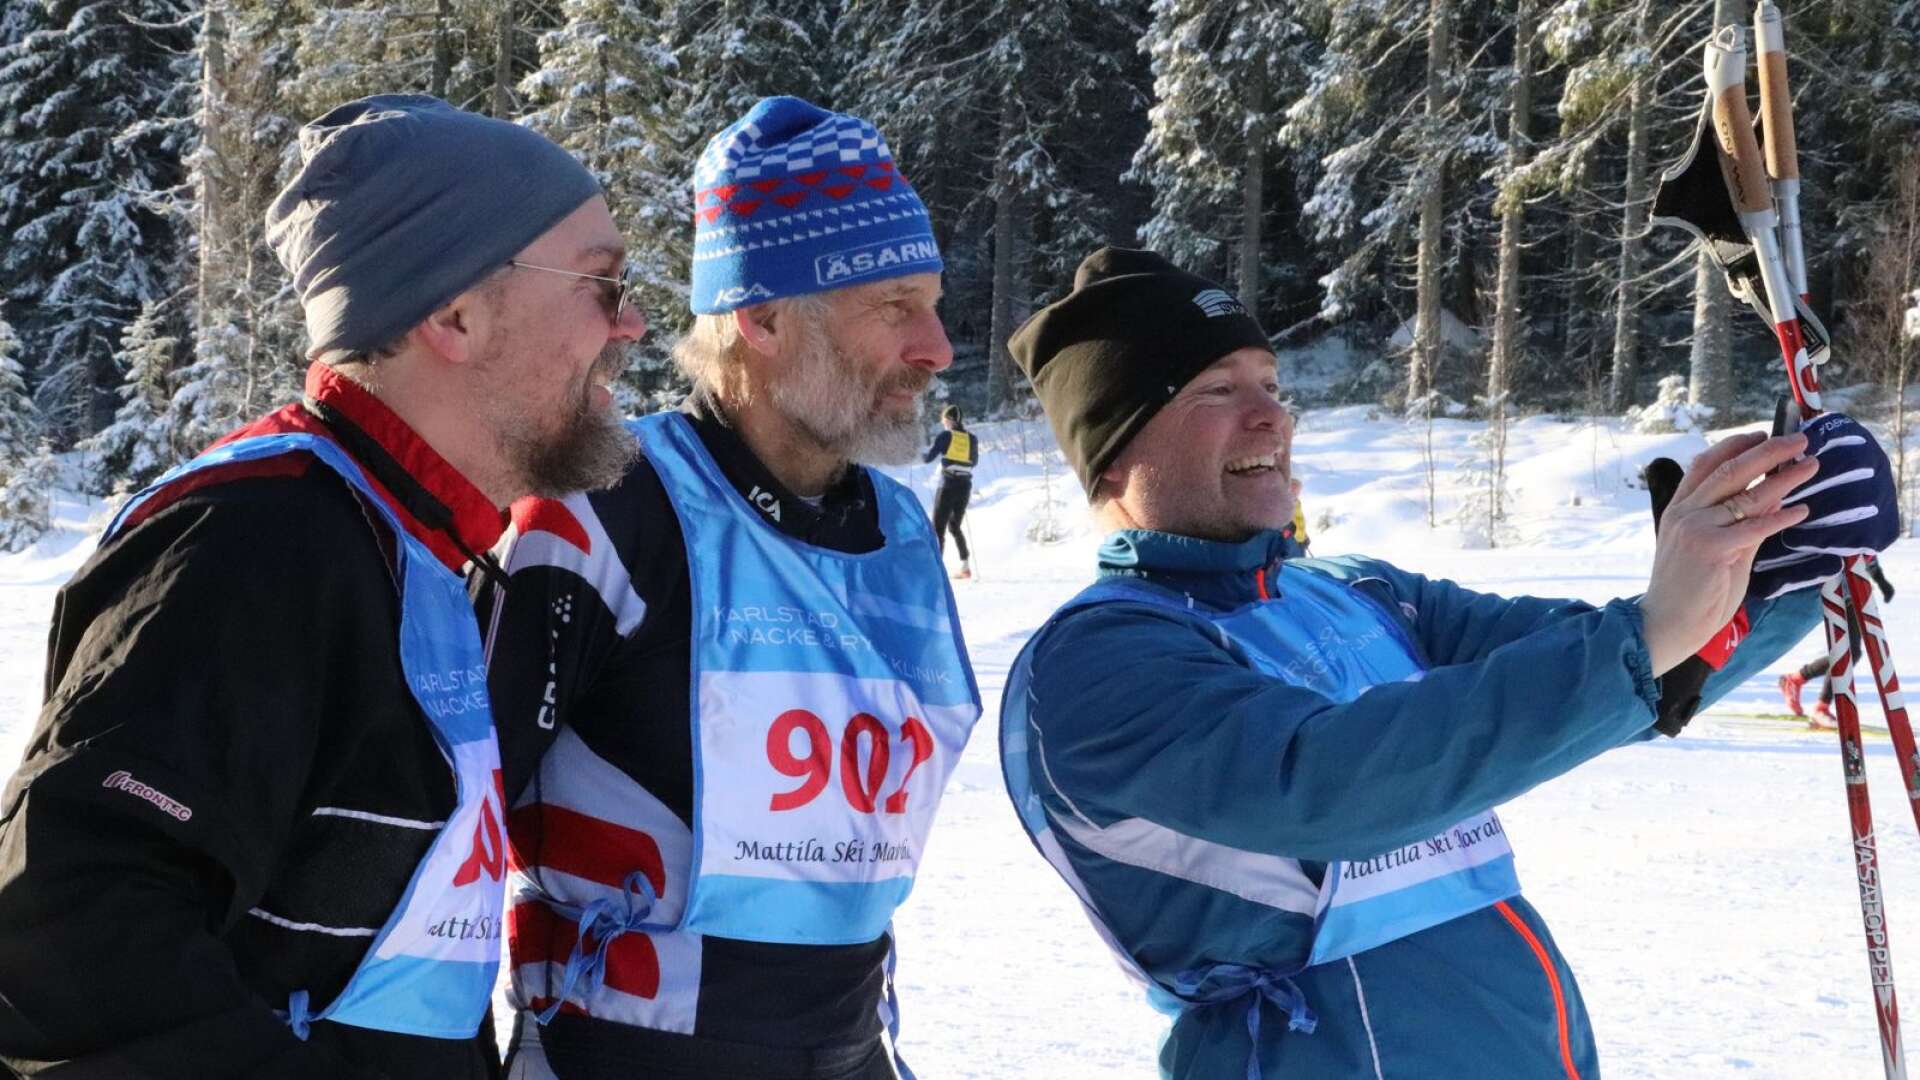 Johan Erlandsson och Tobias Eriksson tiggde till sig en selfie med Thomas Wassberg strax före start i Mattilas-marans 40-årsjubileum.